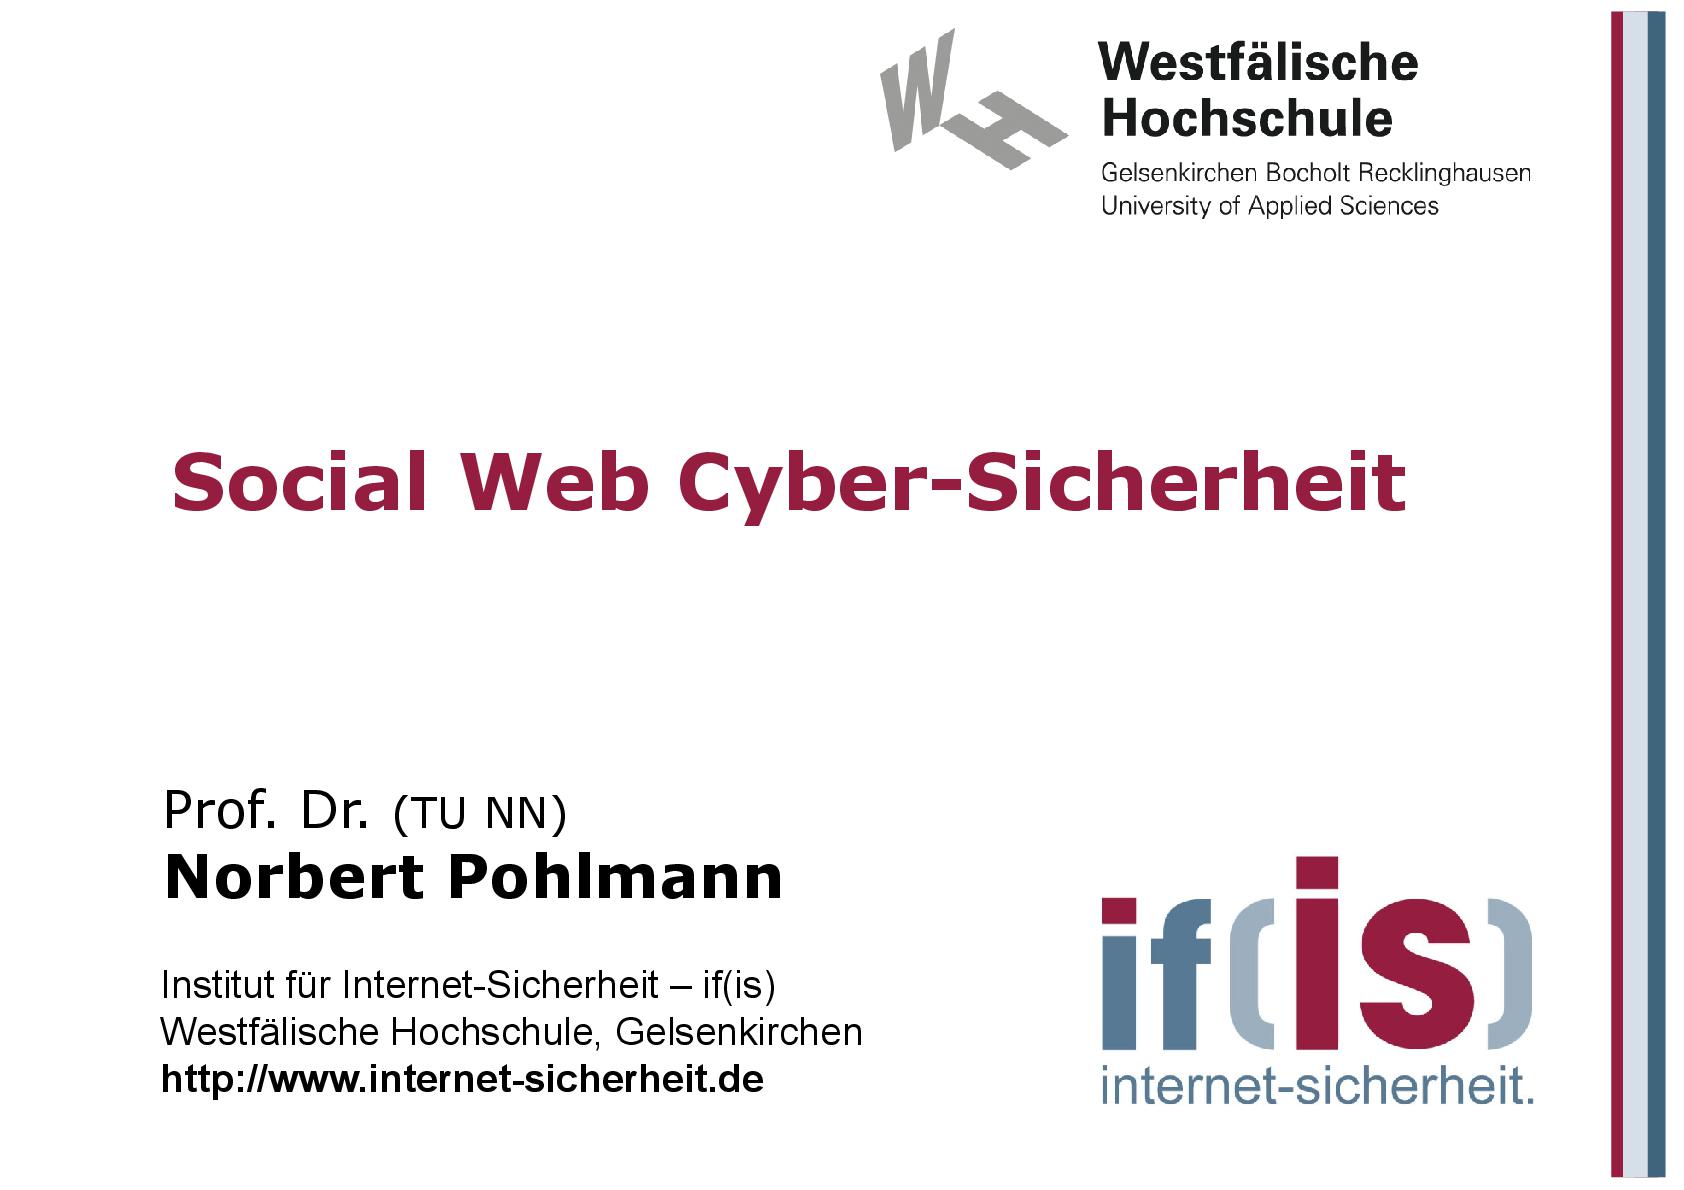 Social Web Cyber-Sicherheit aus Vorlesungsreihe Cyber-Sicherheit